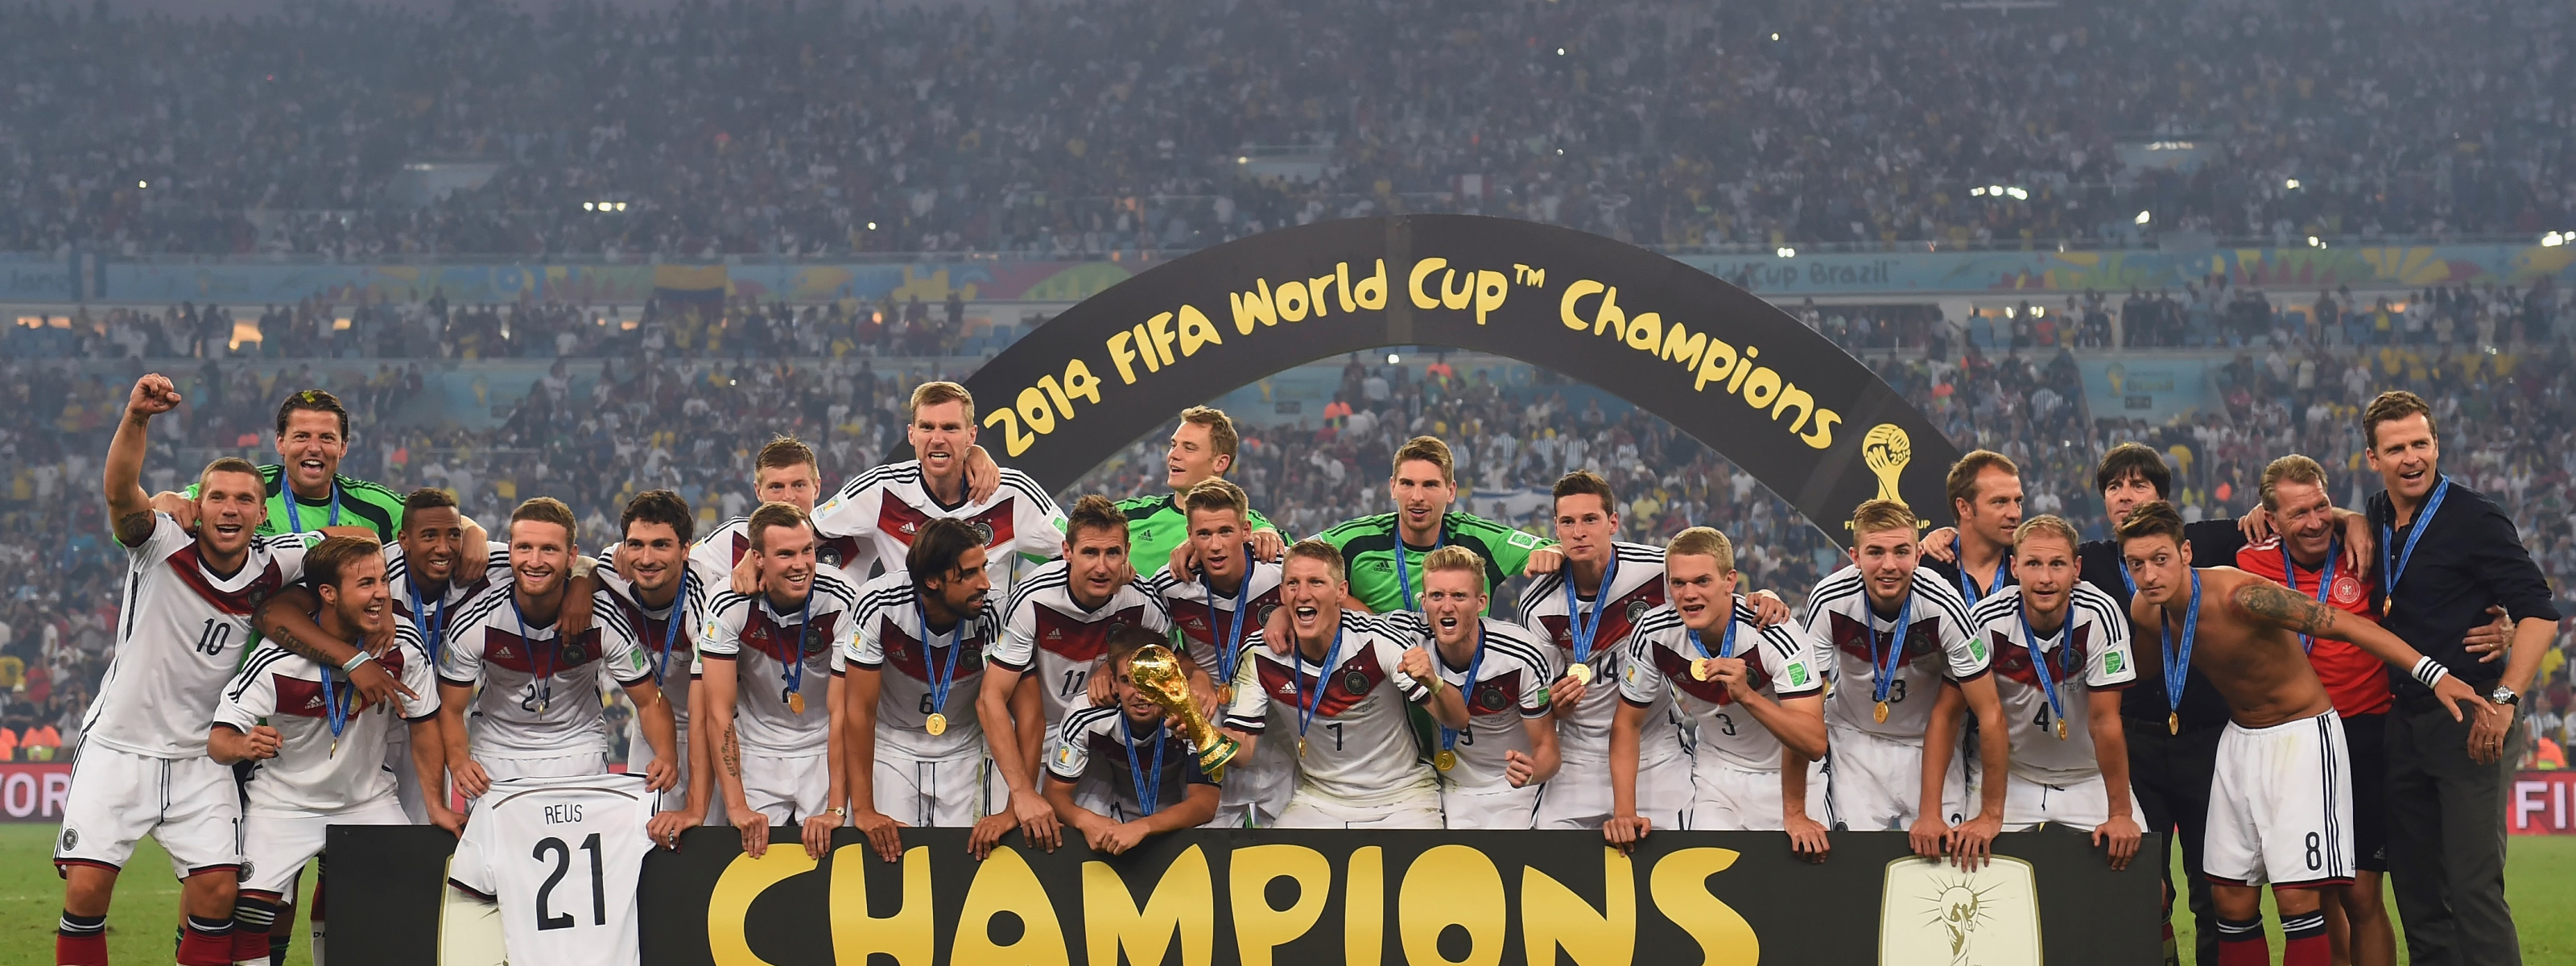 Сколько раз становилась чемпионом сборная команда германии